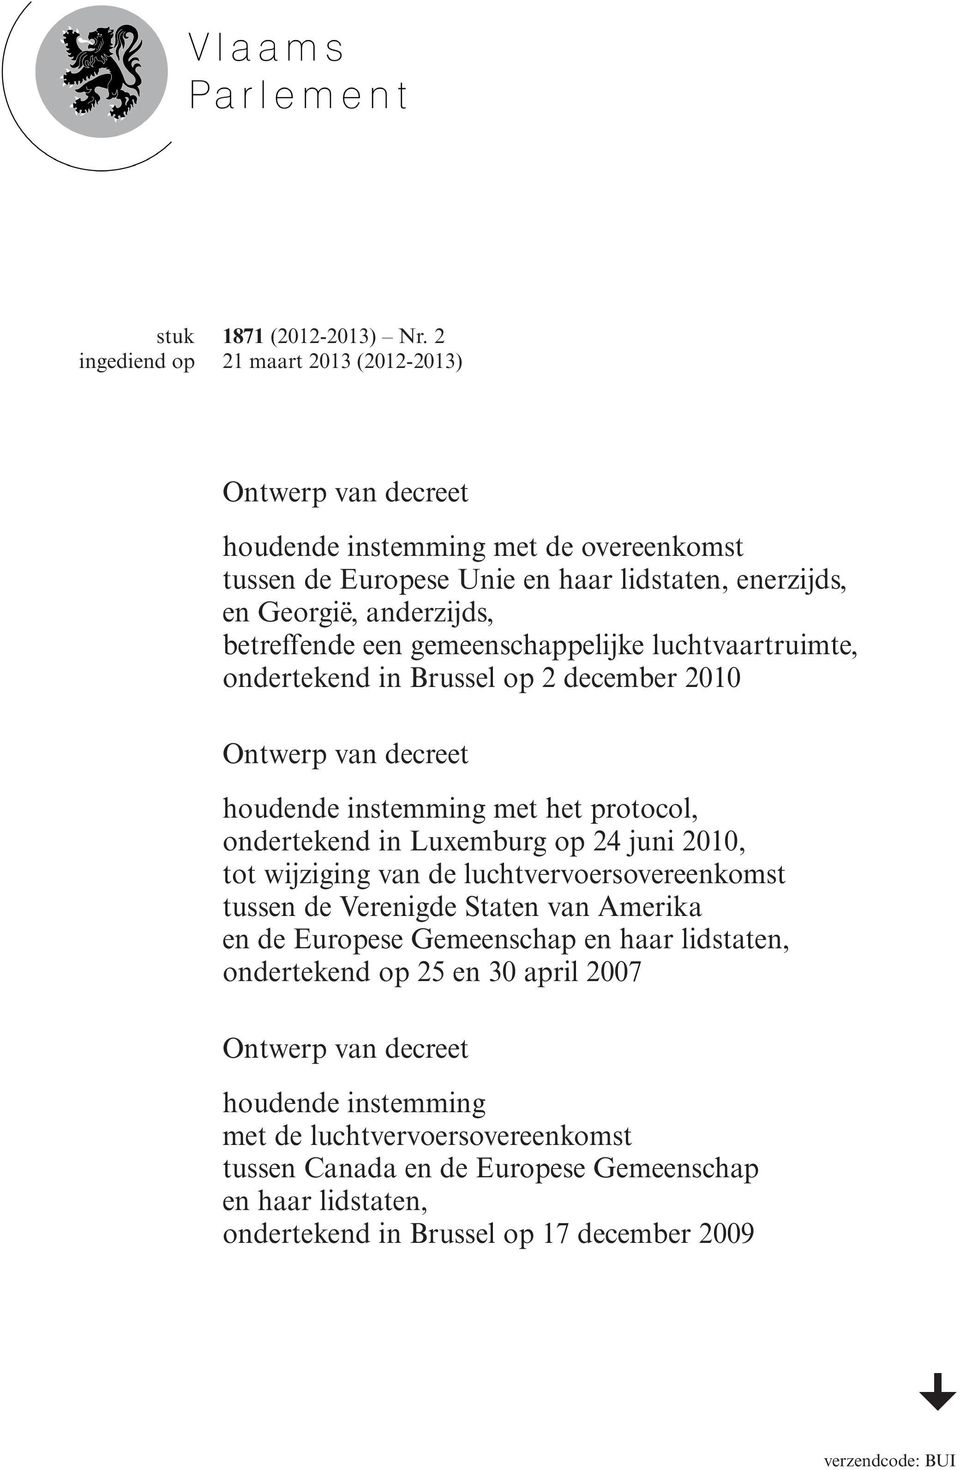 gemeenschappelijke luchtvaartruimte, ondertekend in Brussel op 2 december 2010 Ontwerp van decreet houdende instemming met het protocol, ondertekend in Luxemburg op 24 juni 2010, tot